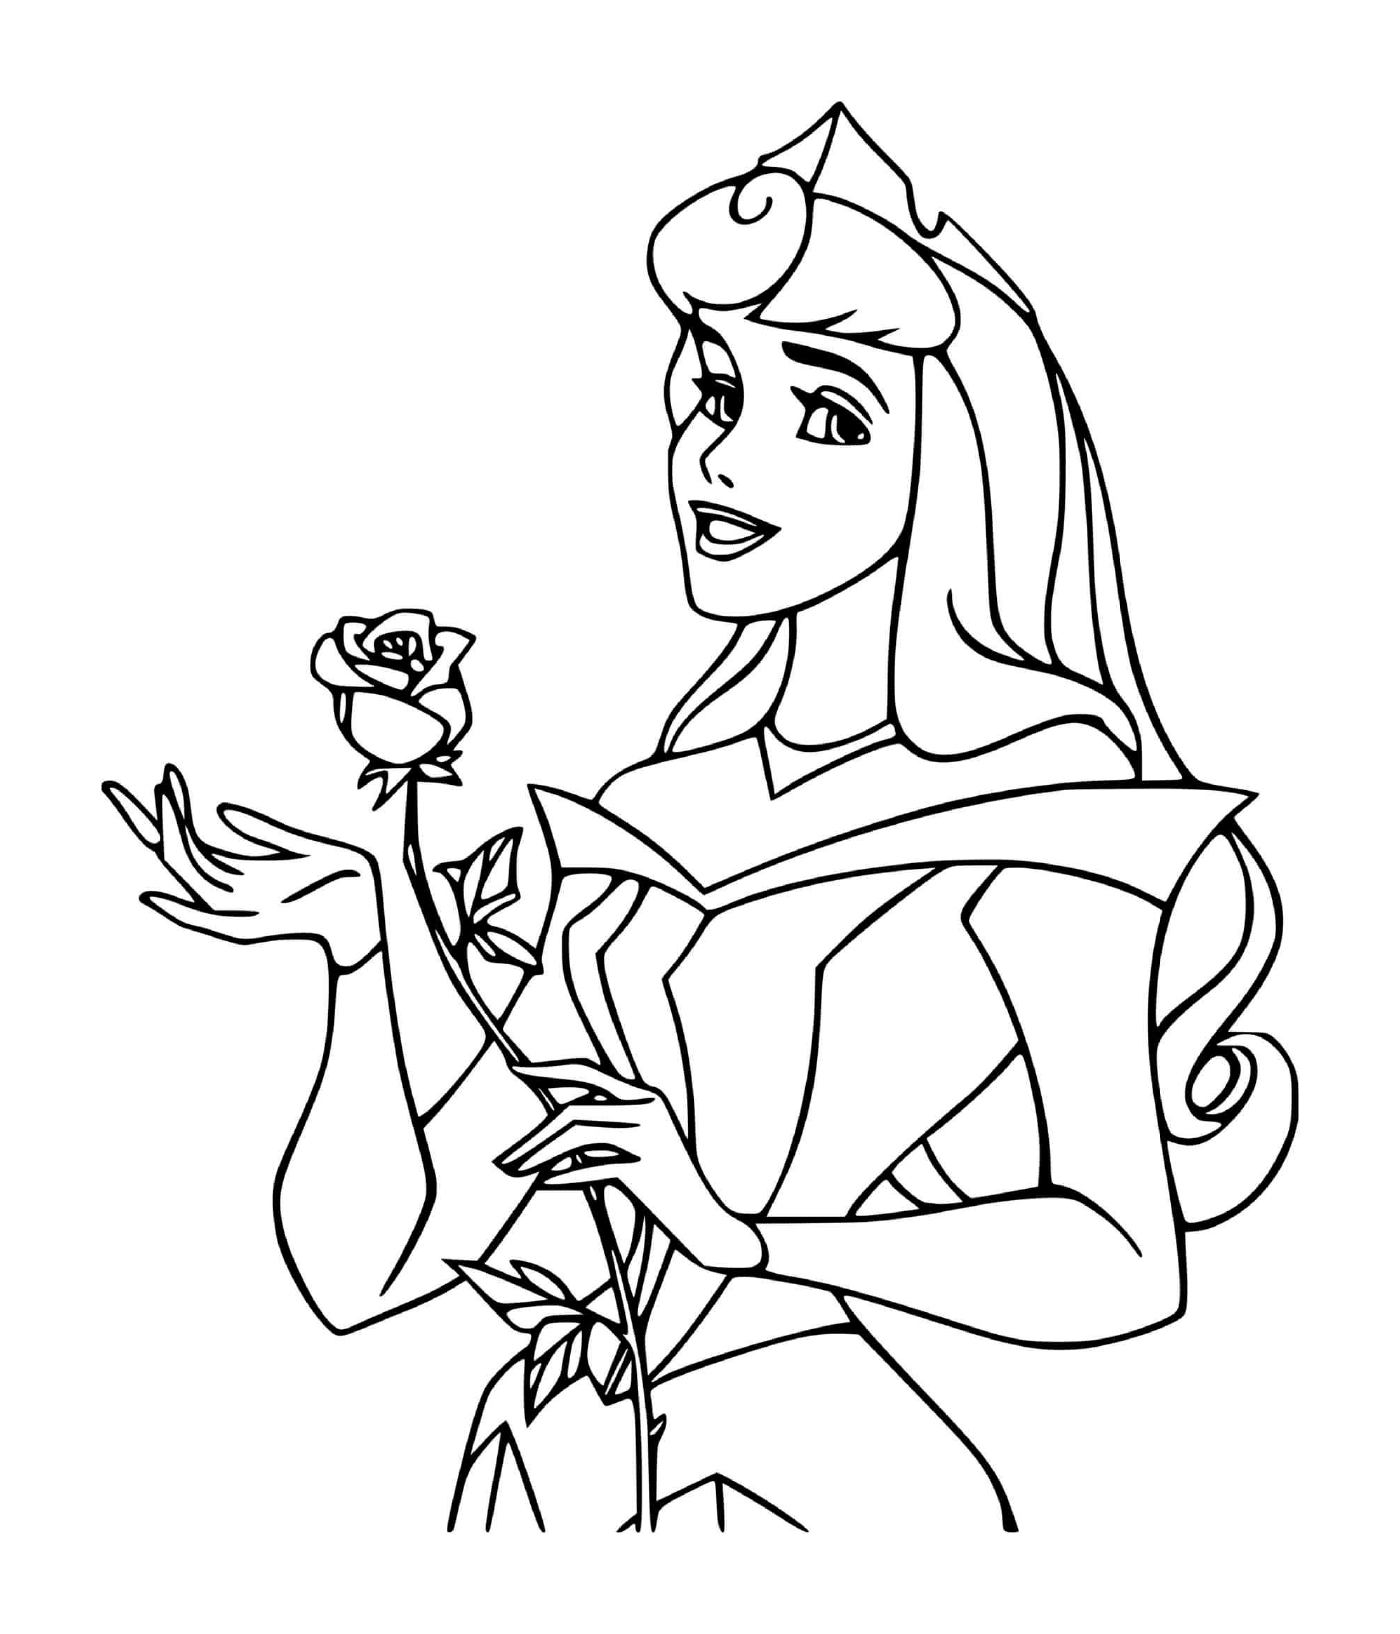  Princess of La Belle au bois dormant (Disney) with rose 